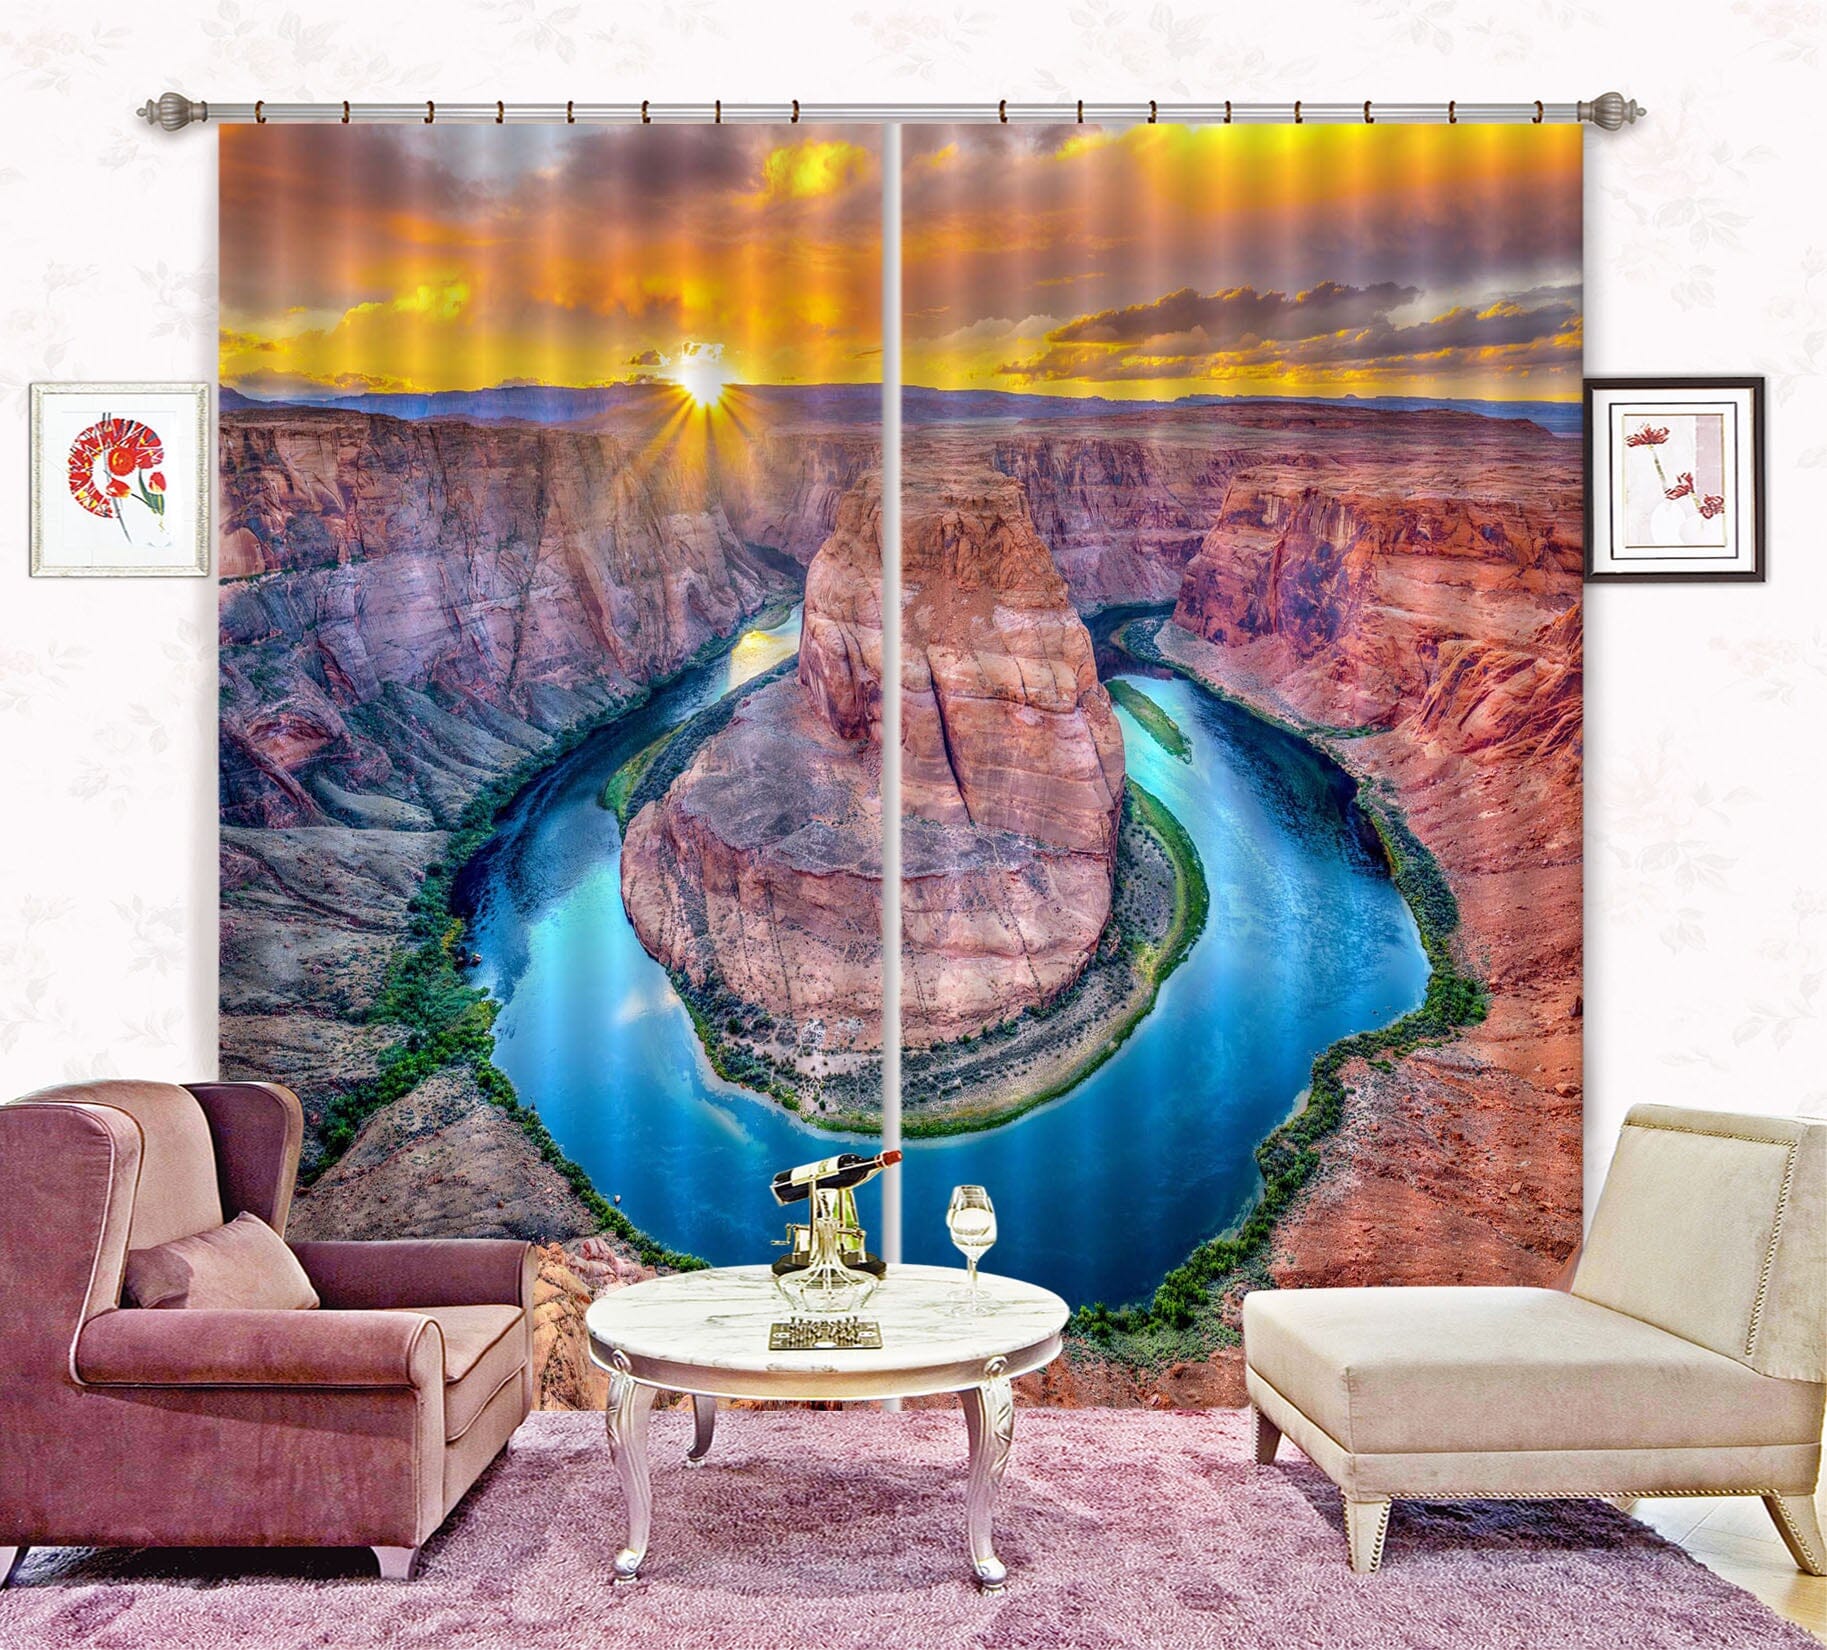 3D Mountain Peak 084 Marco Carmassi Curtain Curtains Drapes Curtains AJ Creativity Home 